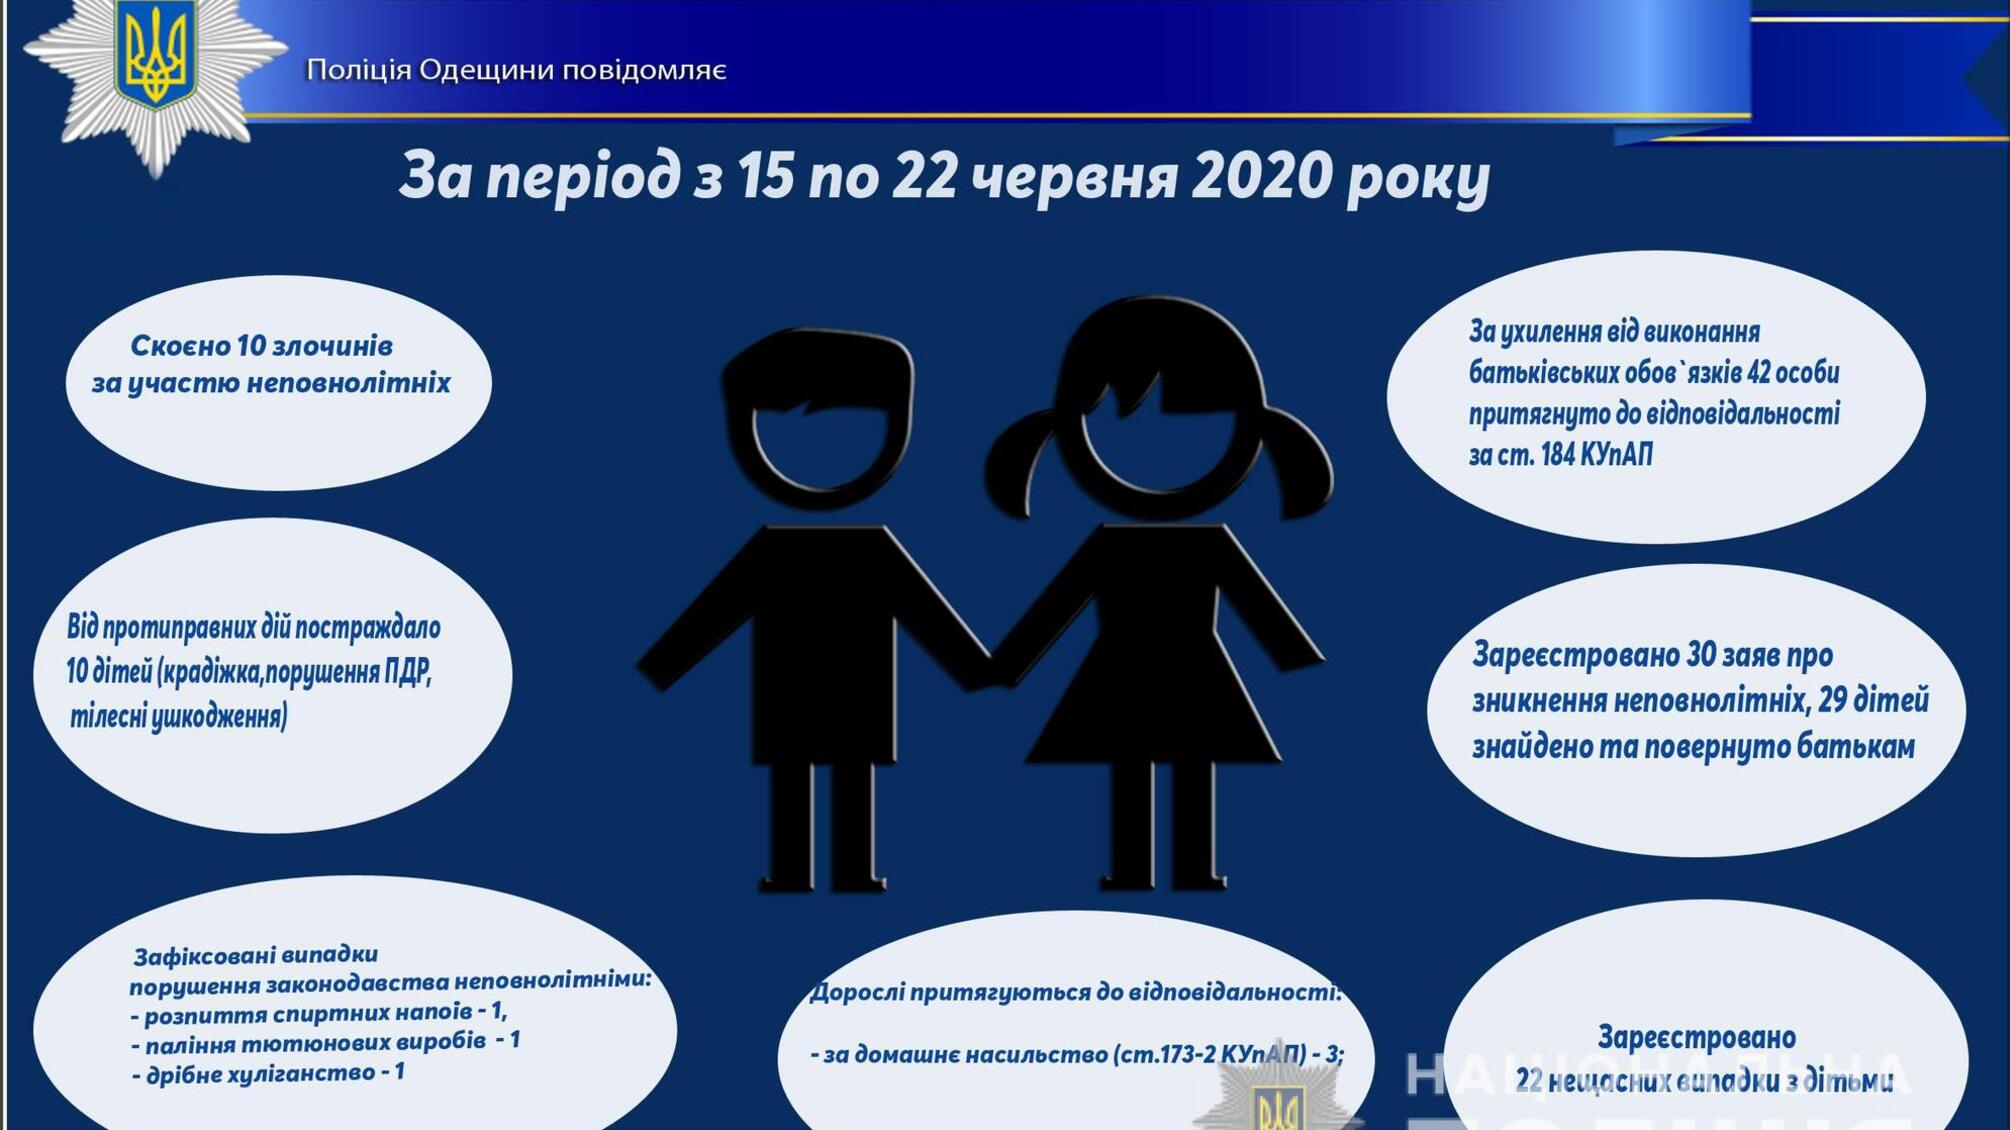 Про стан роботи поліції Одещини з протидії порушенням законодавства неповнолітніми та відносно них за період з 15 по 22 червня 2020 року